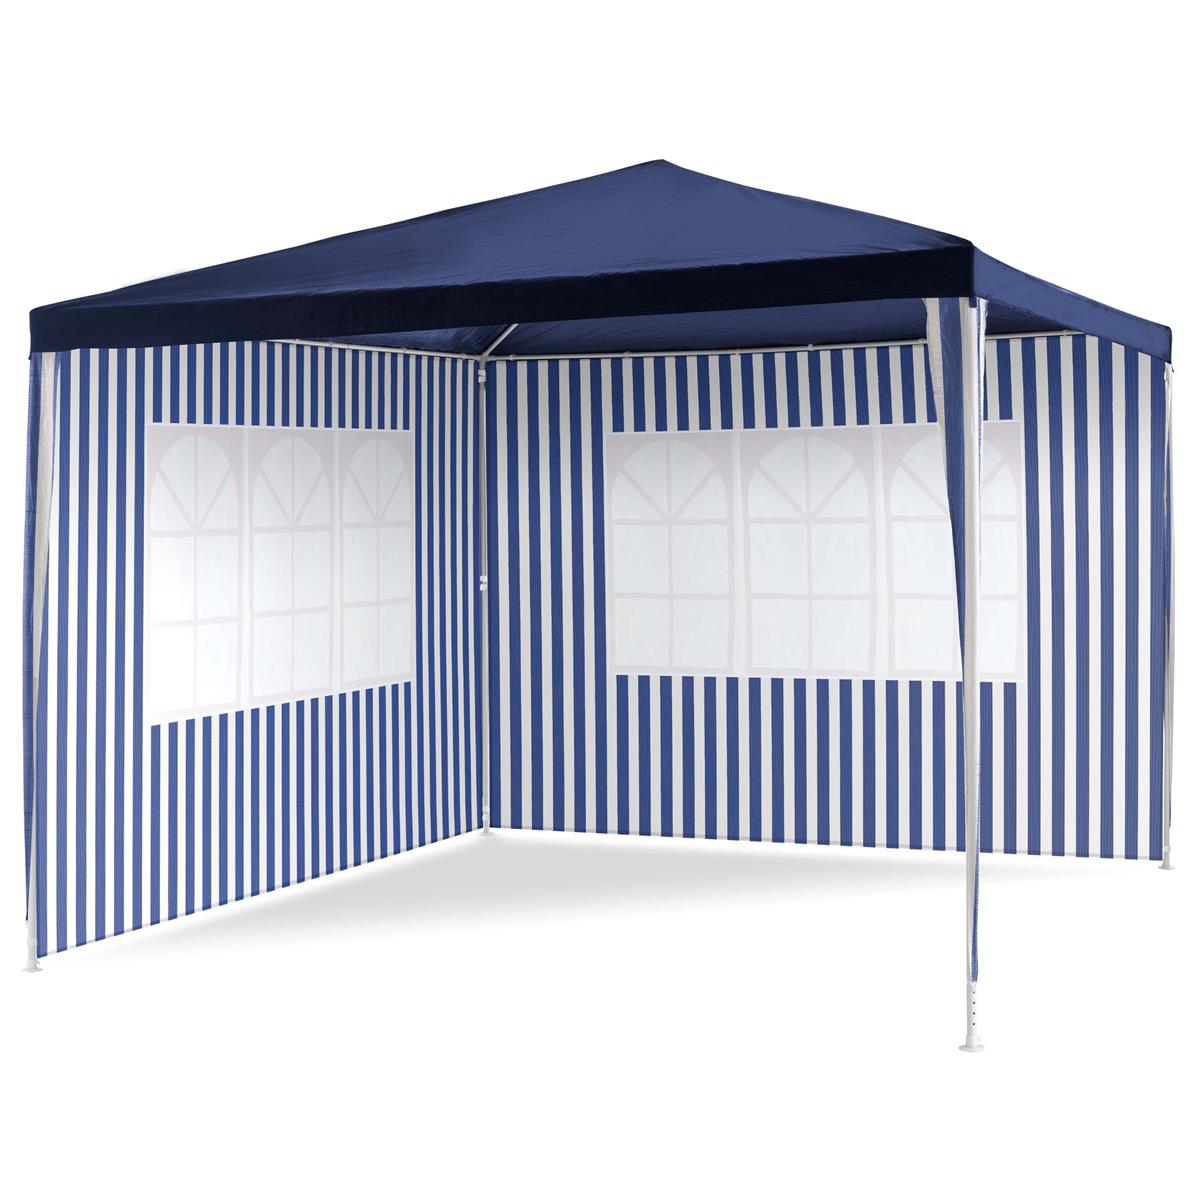 Pavillon 3x3 m in blau weiß PE Plane 2 Seitenteile Partyzelt Gartenzelt Zelt